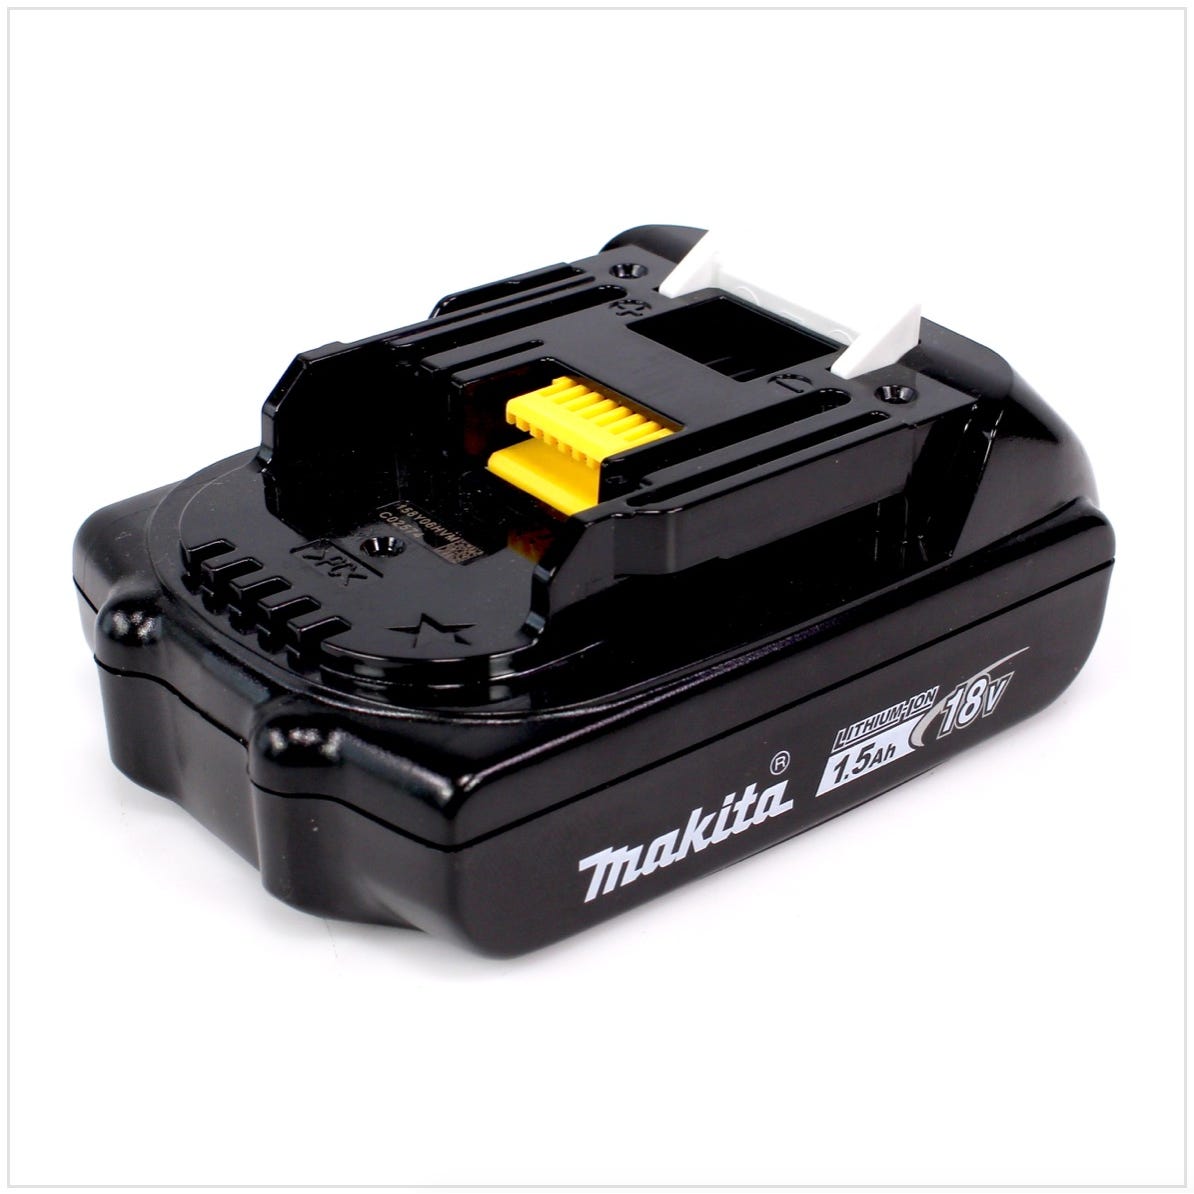 Makita DDF 483 Y1J 18 V Perceuse visseuse sans fil avec boîtier Makpac + 1x Batterie BL 1815 1,5 Ah - sans Chargeur 3